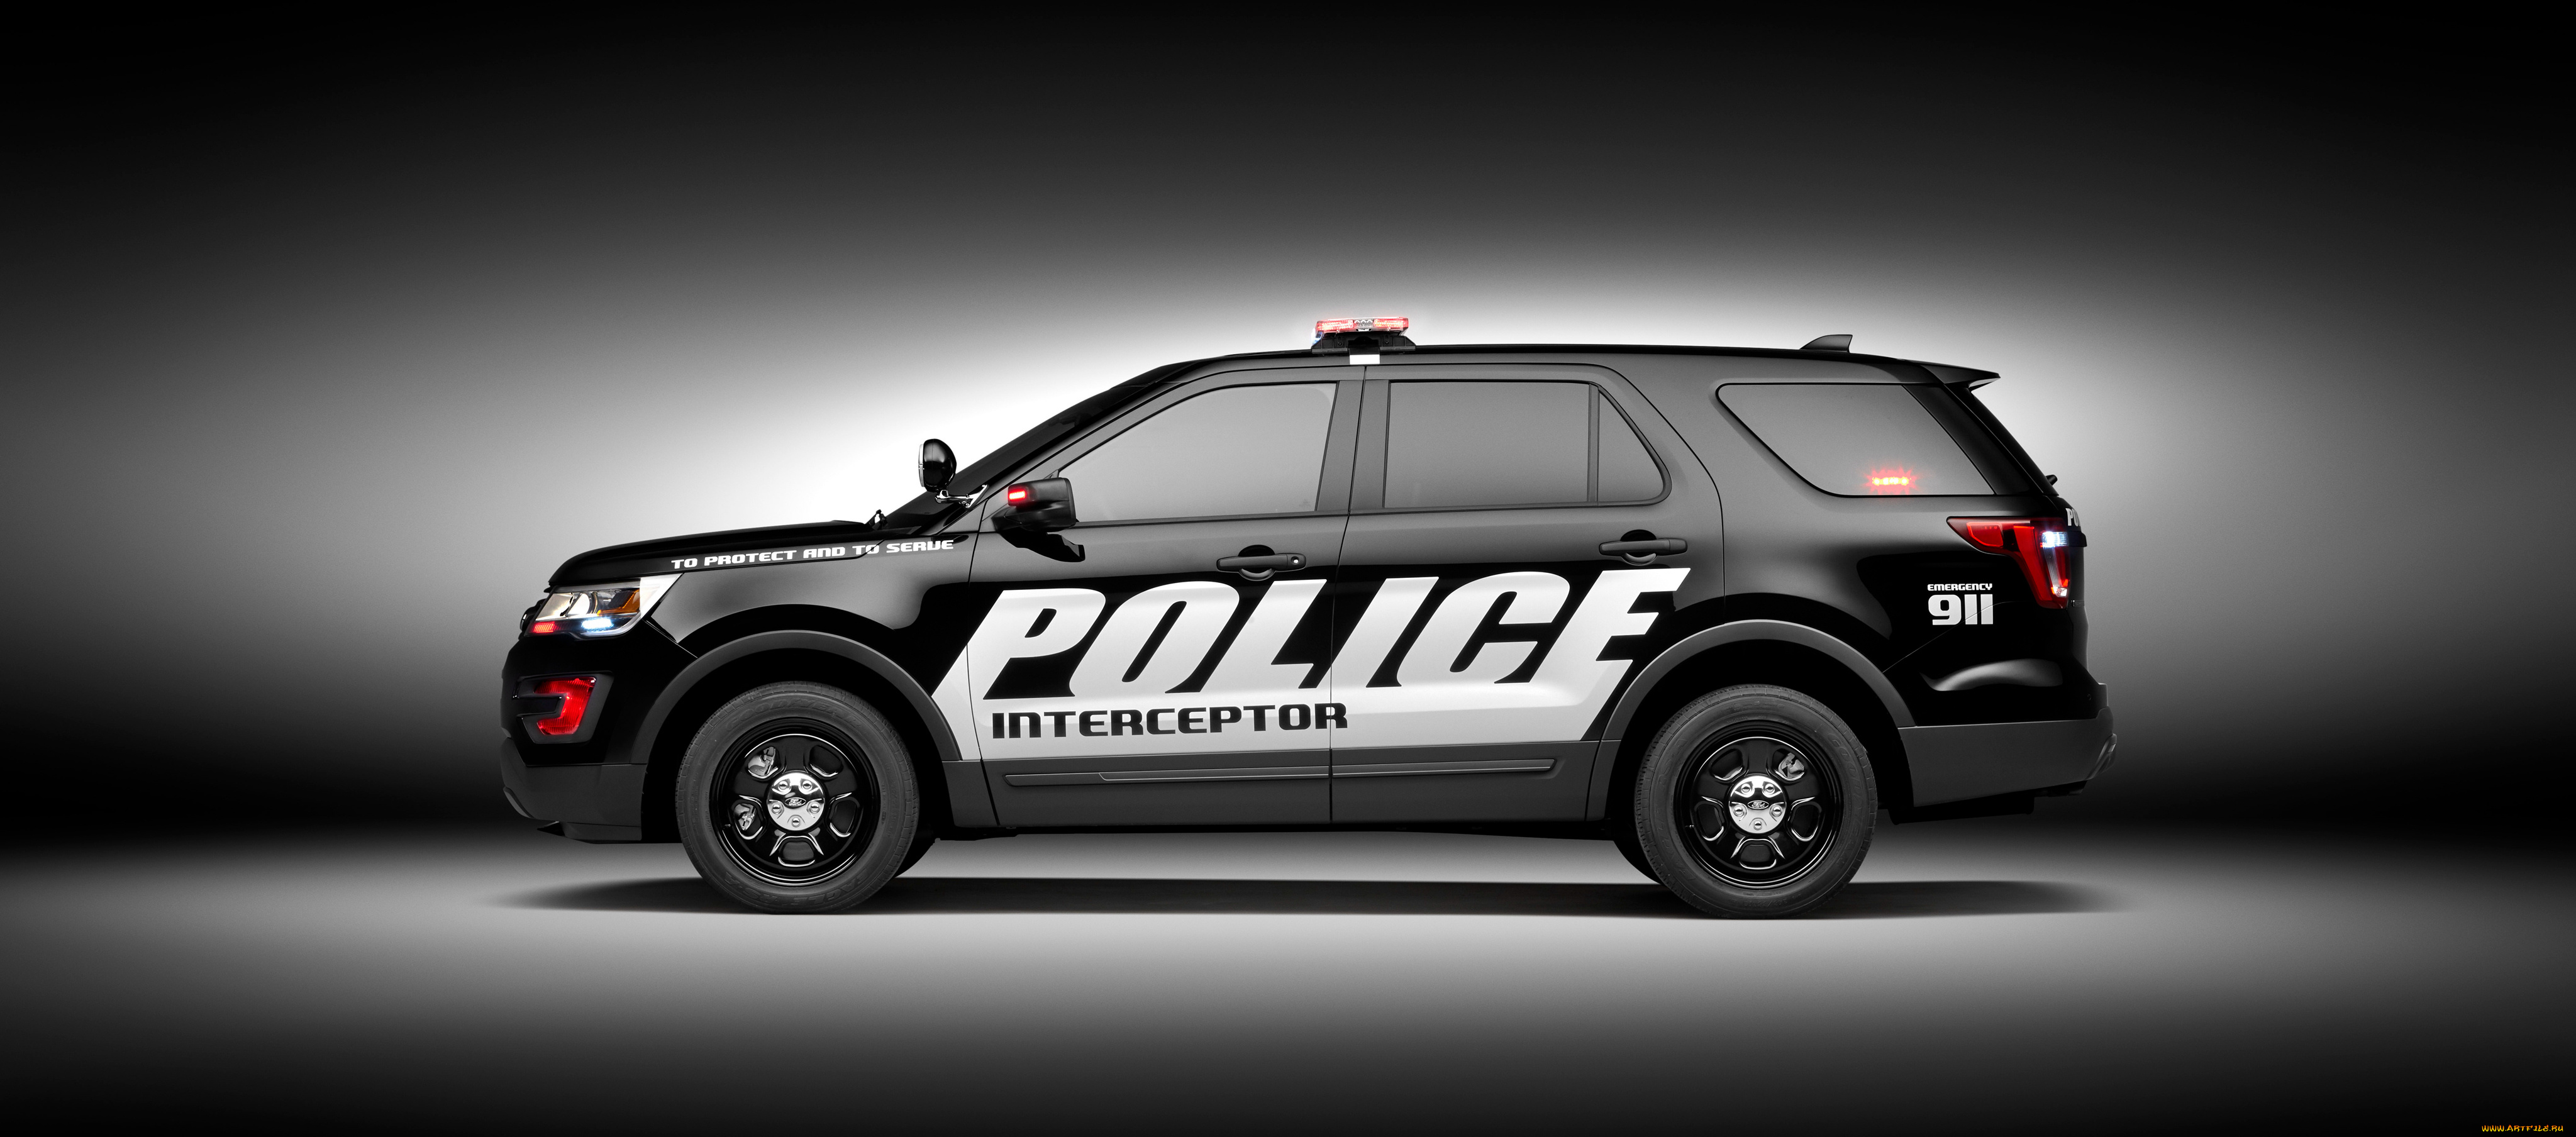 автомобили, полиция, utility, interceptor, police, ford, 2016г, u502